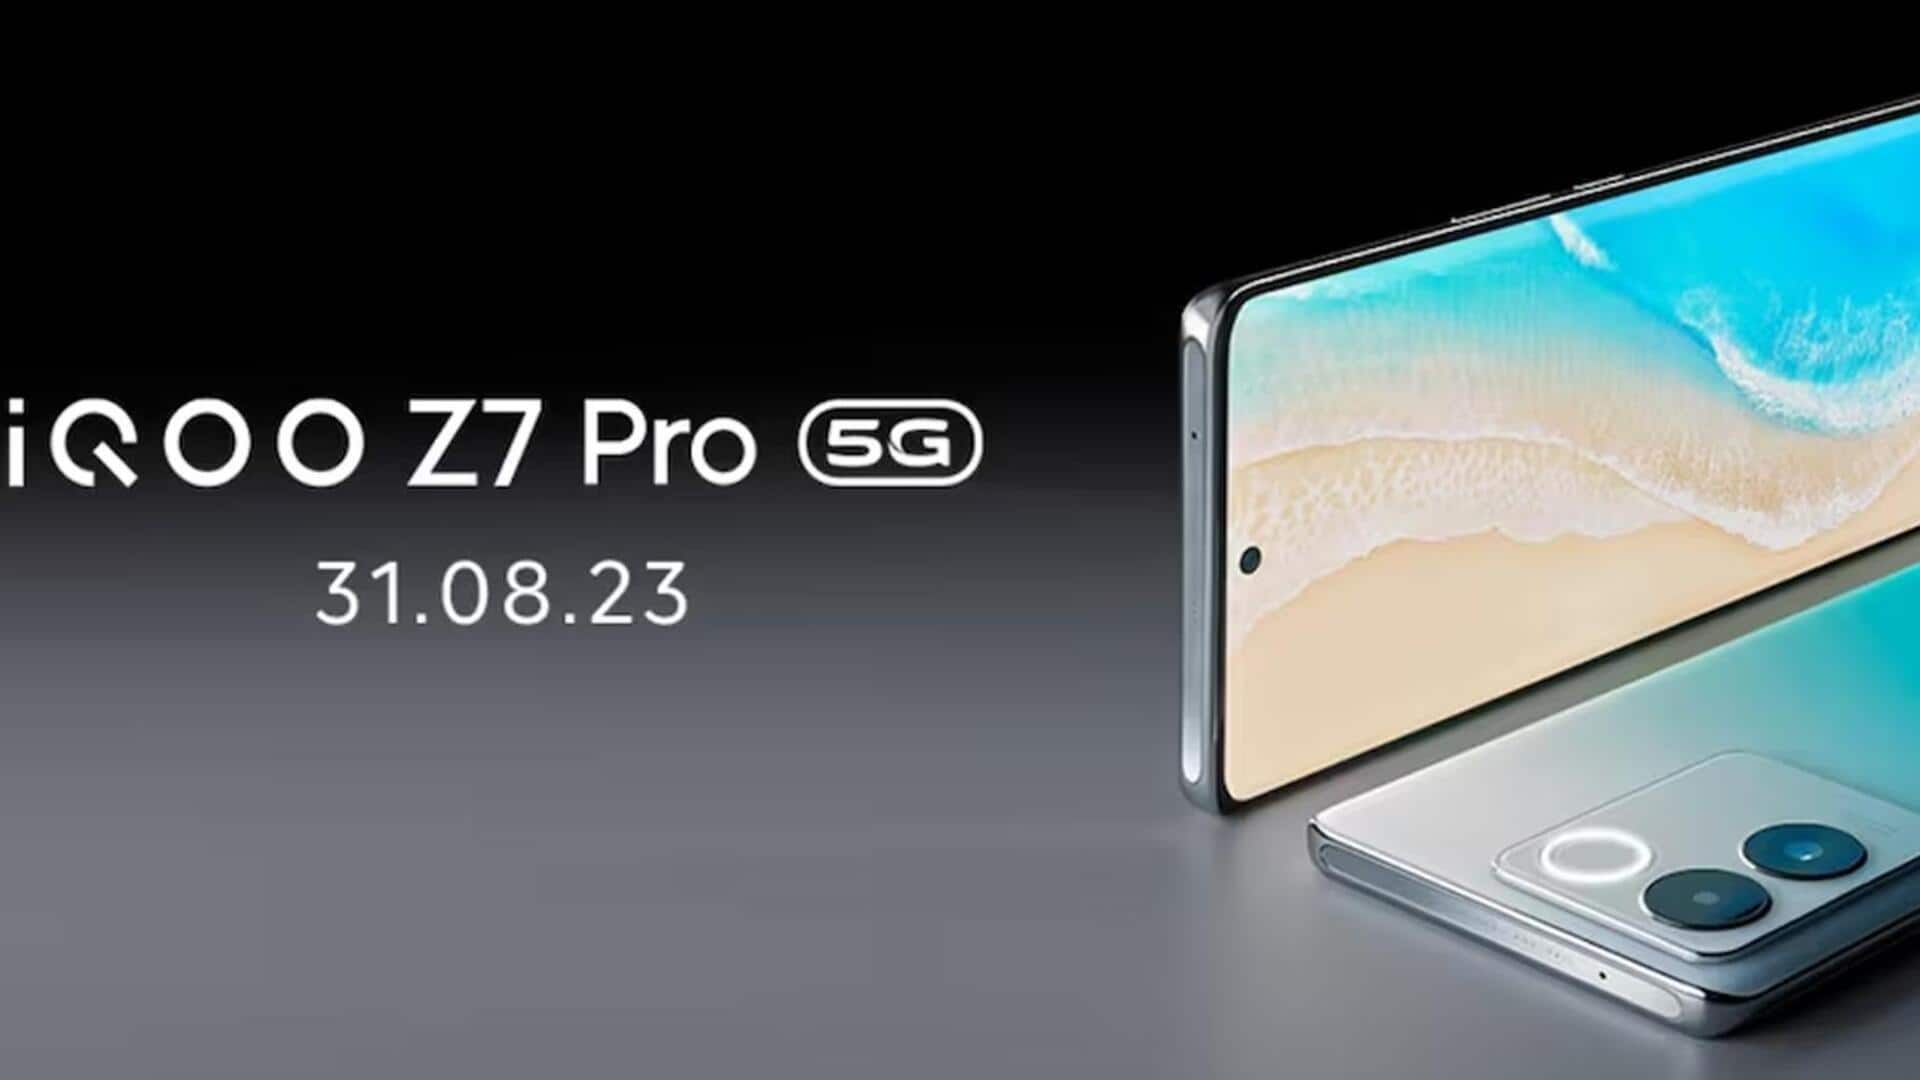 iQoo Z7 प्रो मीडियाटेक डाइमेंशन 7200 चिपसेट से होगा लैस, जानिए अन्य फीचर्स